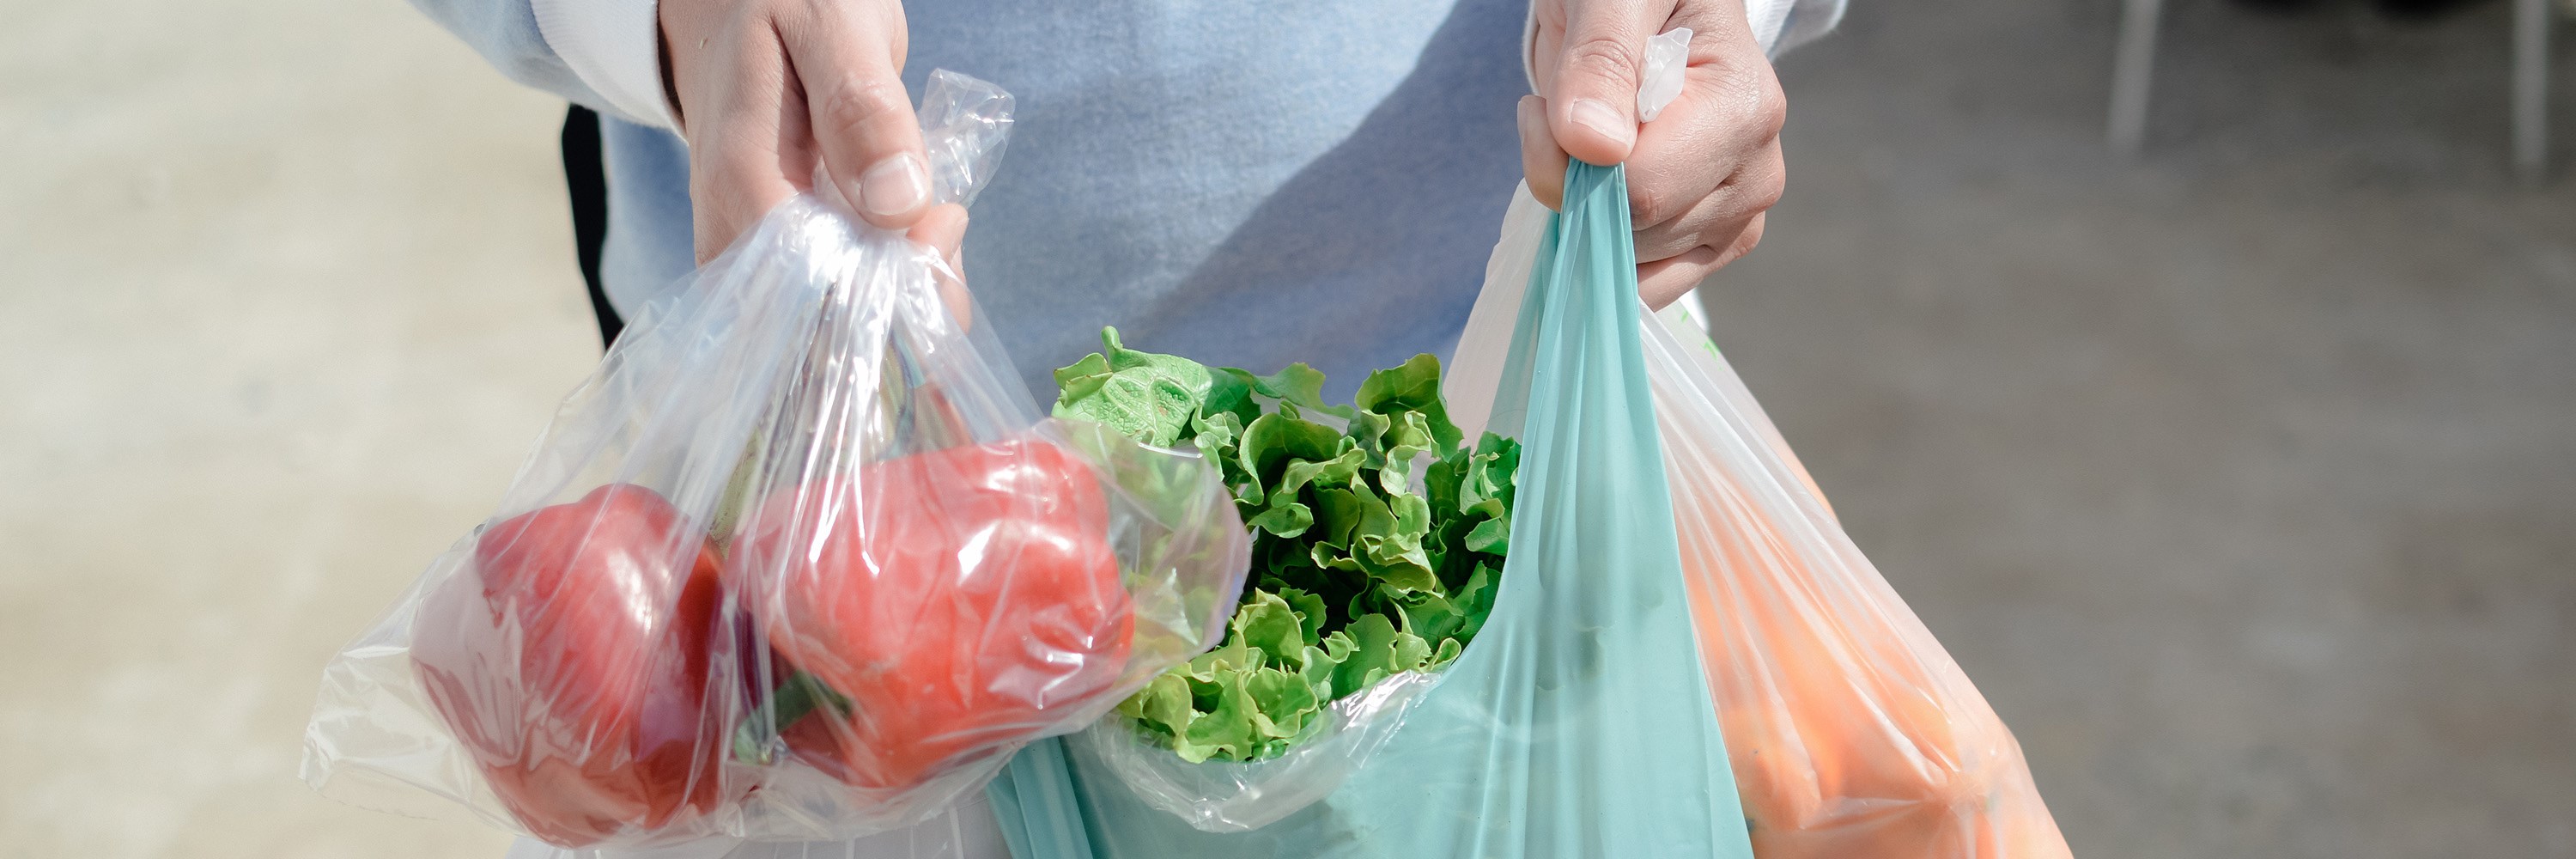 Plastikkposer og grønnsaker. Foto: Arimag/Shutterstock